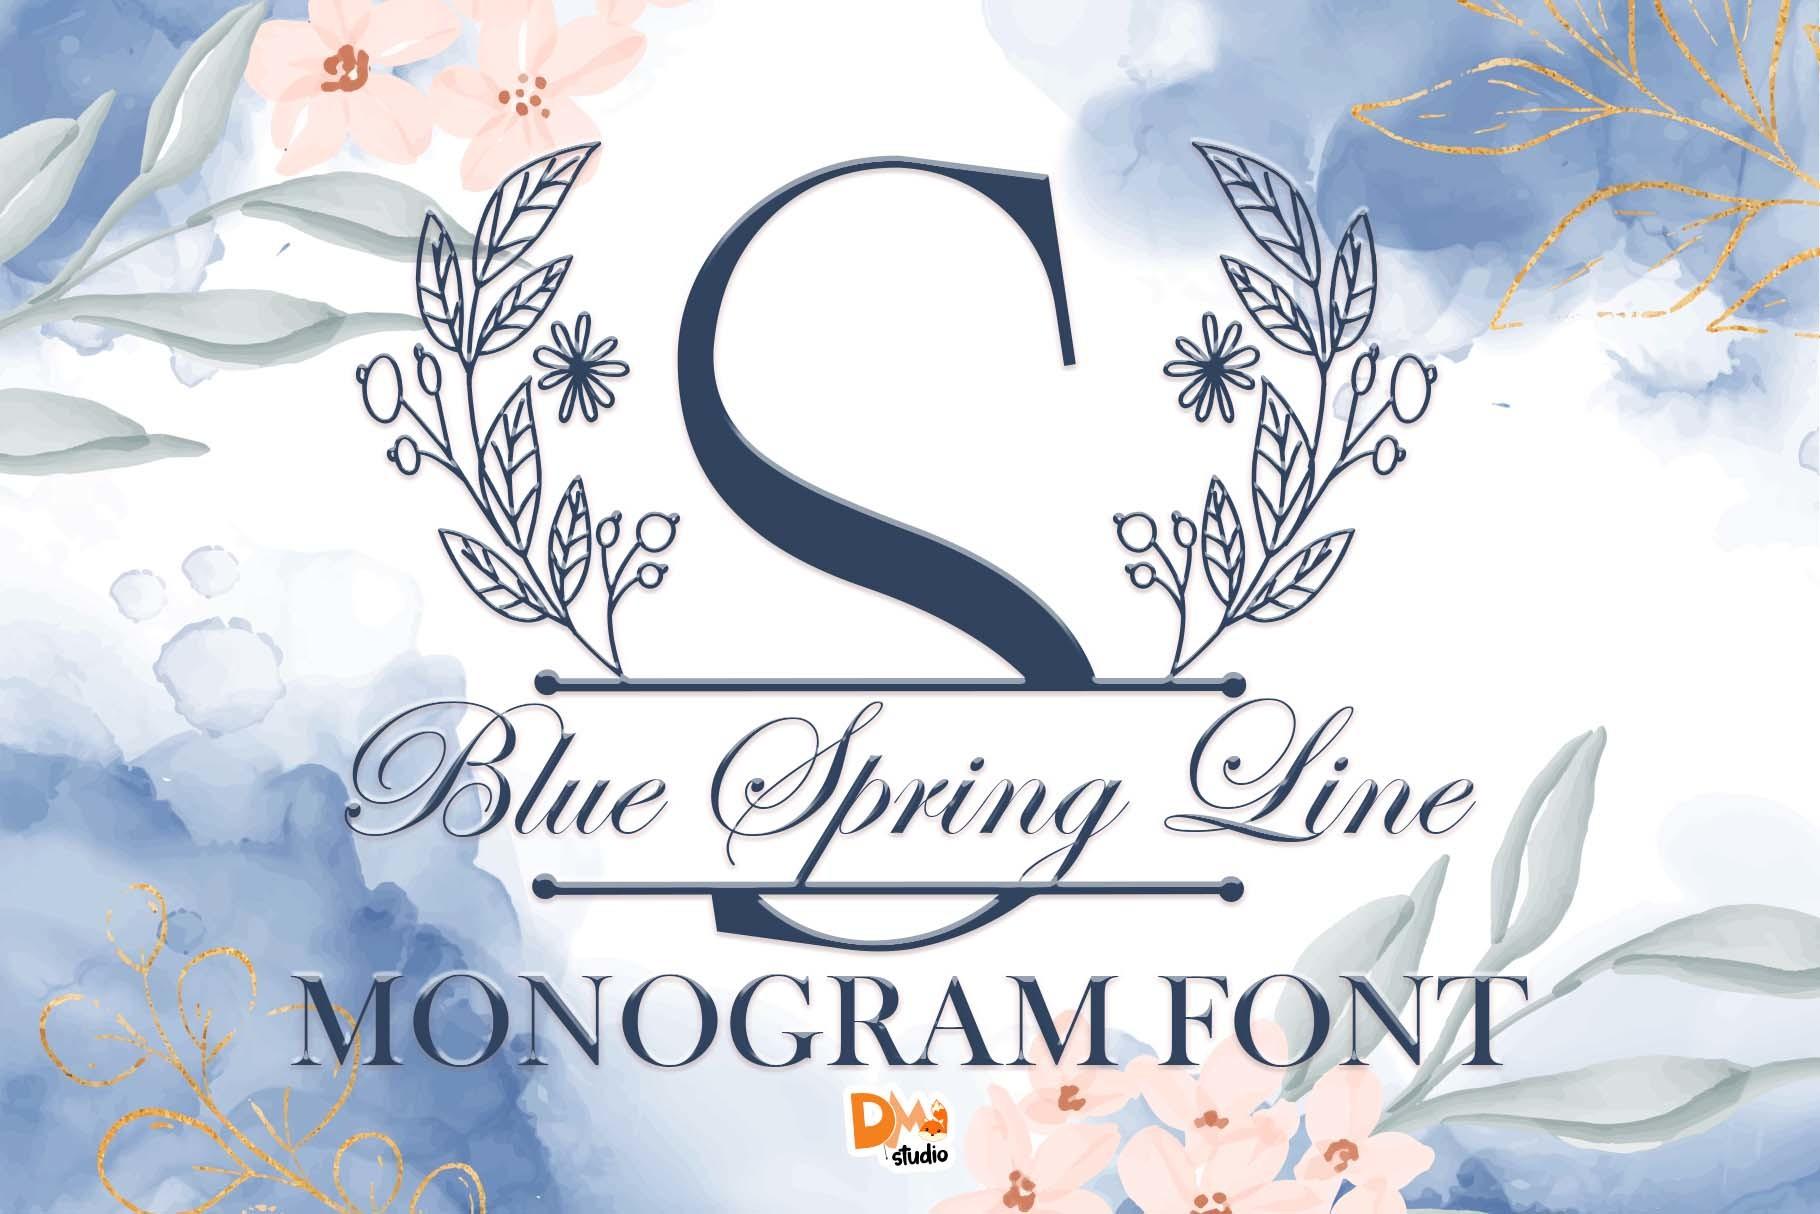 Blue Spring Line Monogram Font